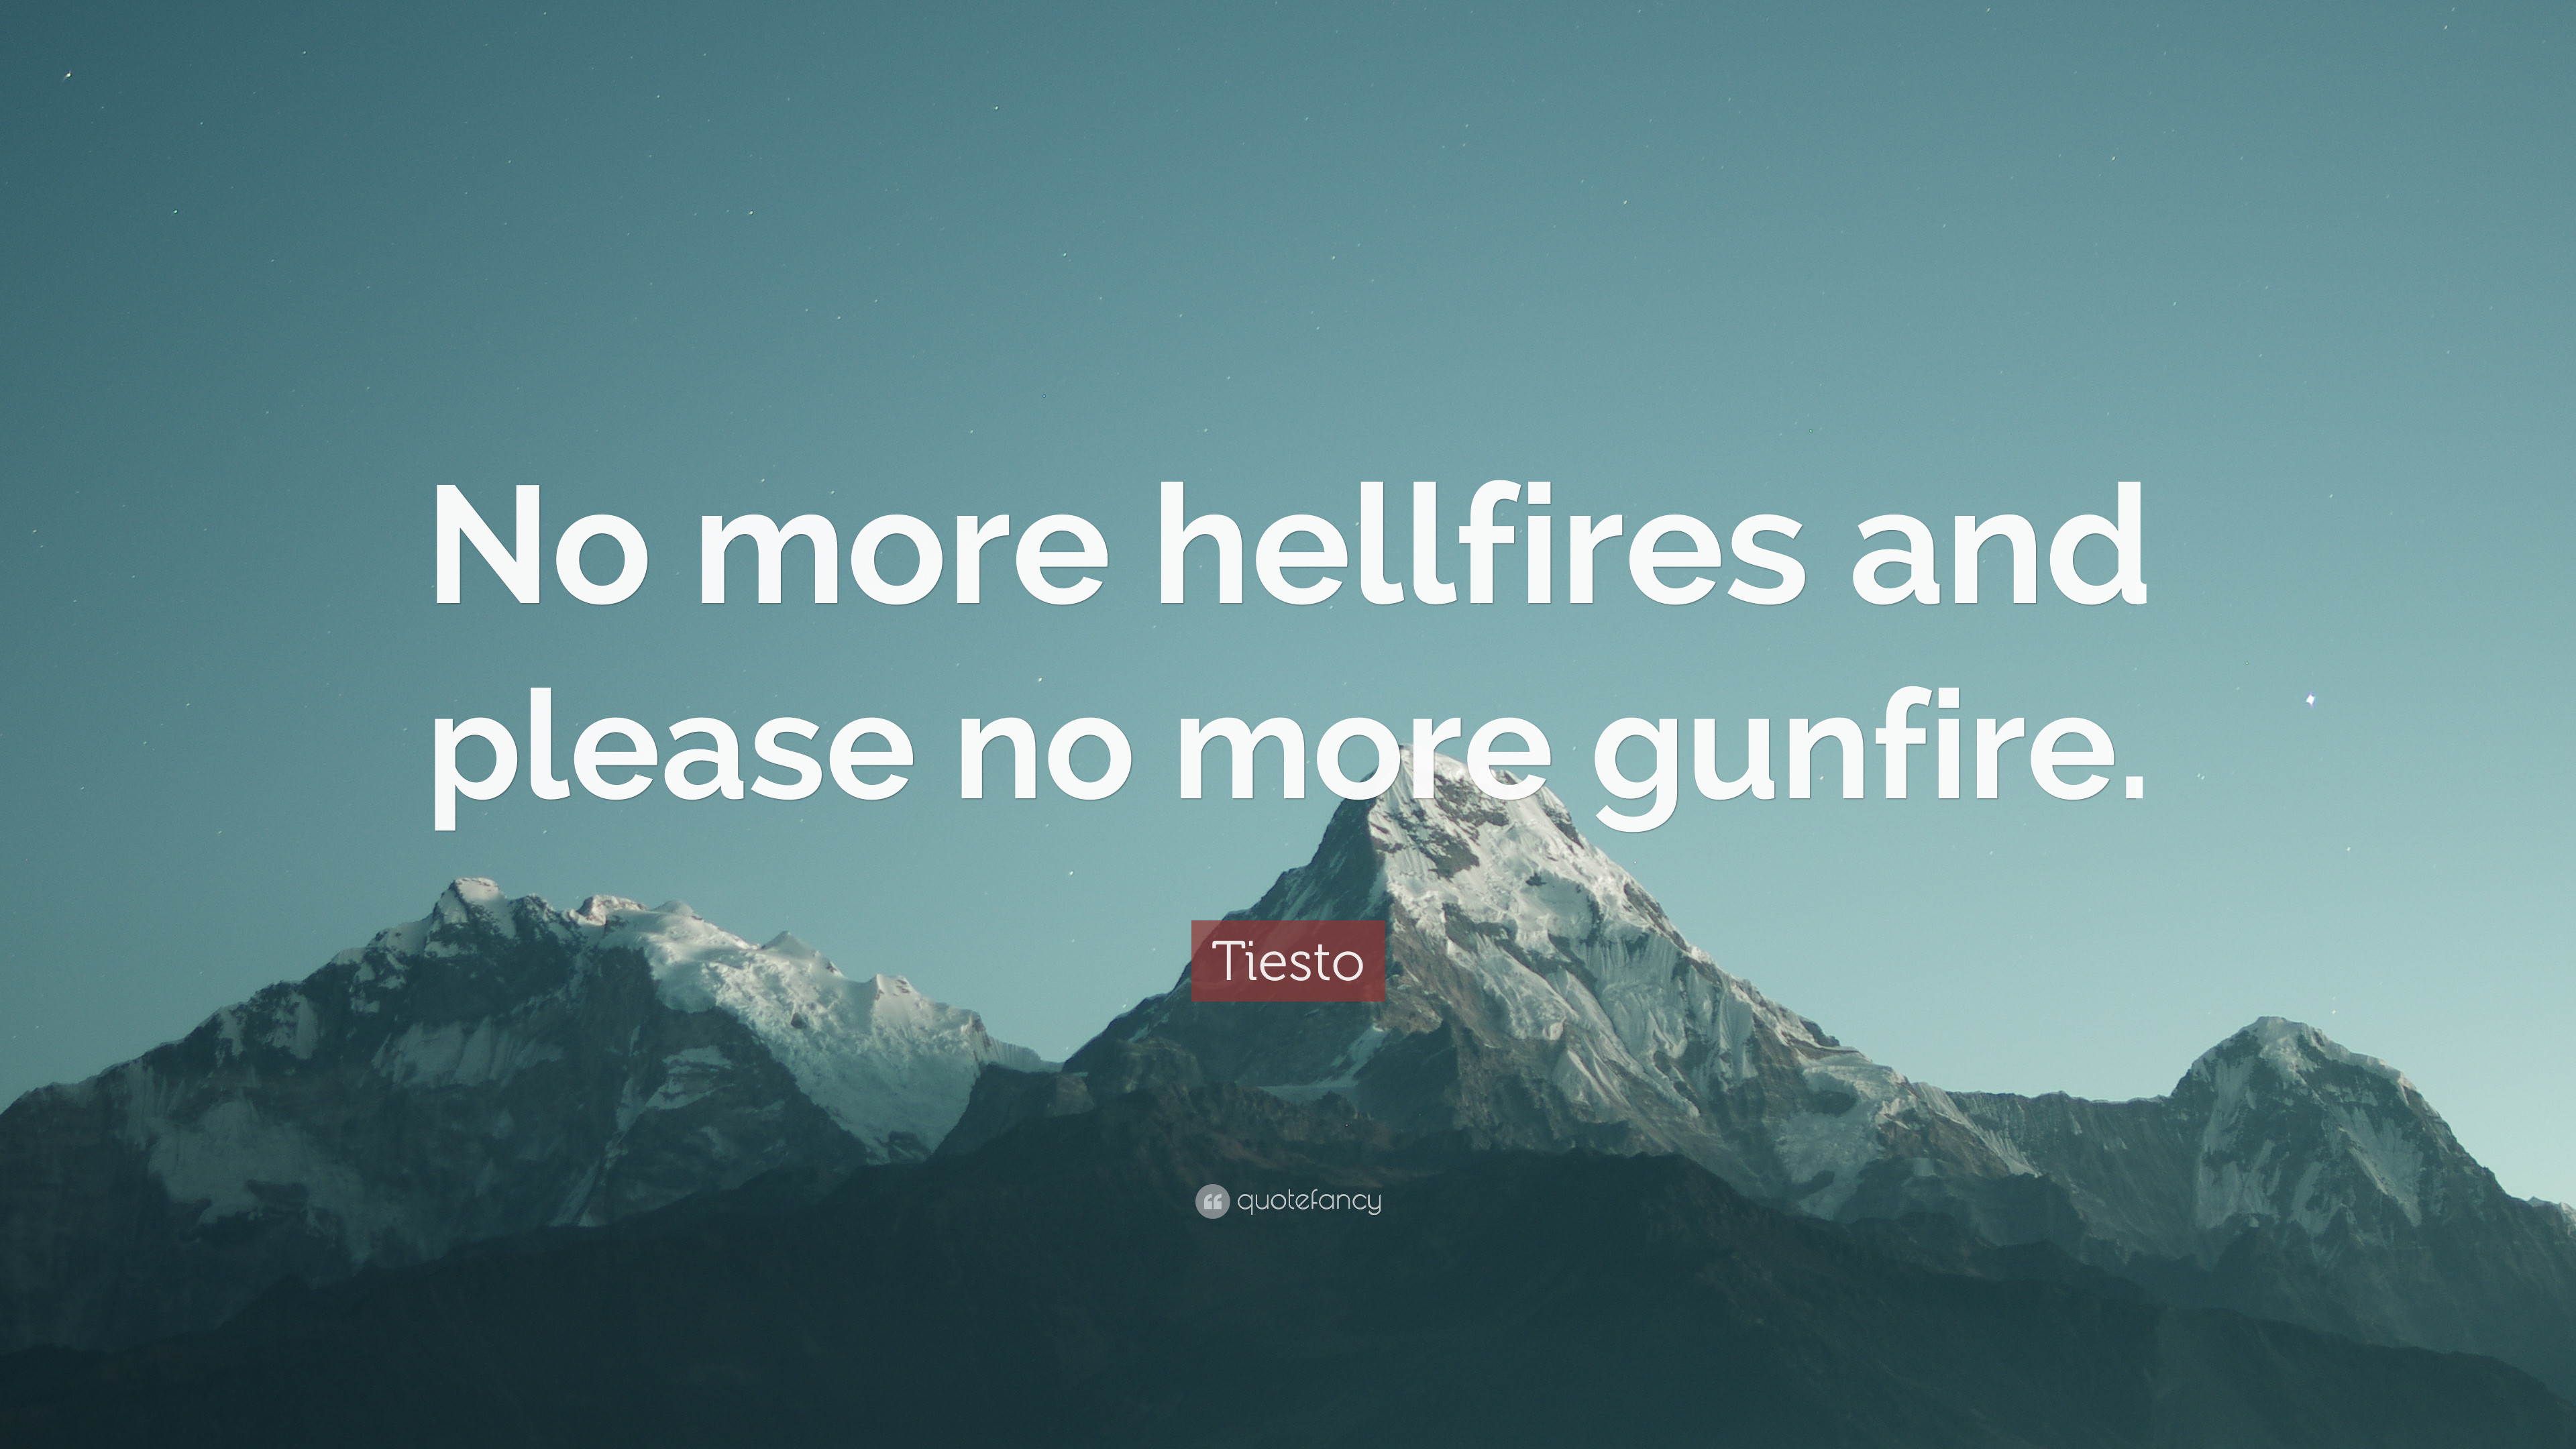 3840x2160 Tiesto Quote: “No more hellfires and please no more gunfire.”